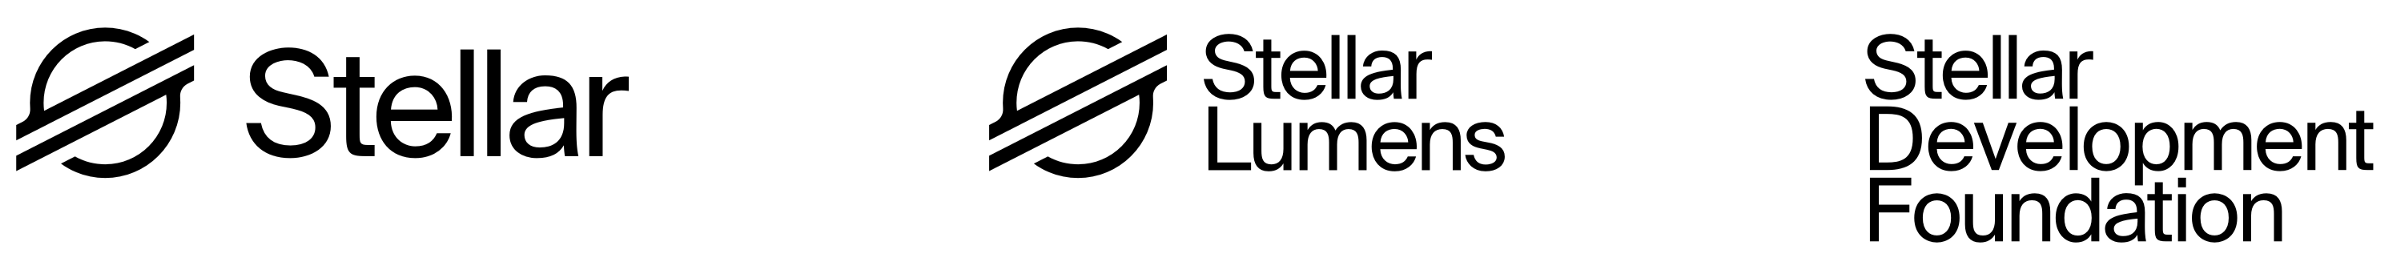 Stellar Yönetimi Önemli Bir Karara İmza Attı: Stellar Logosu Değiştirilecek!